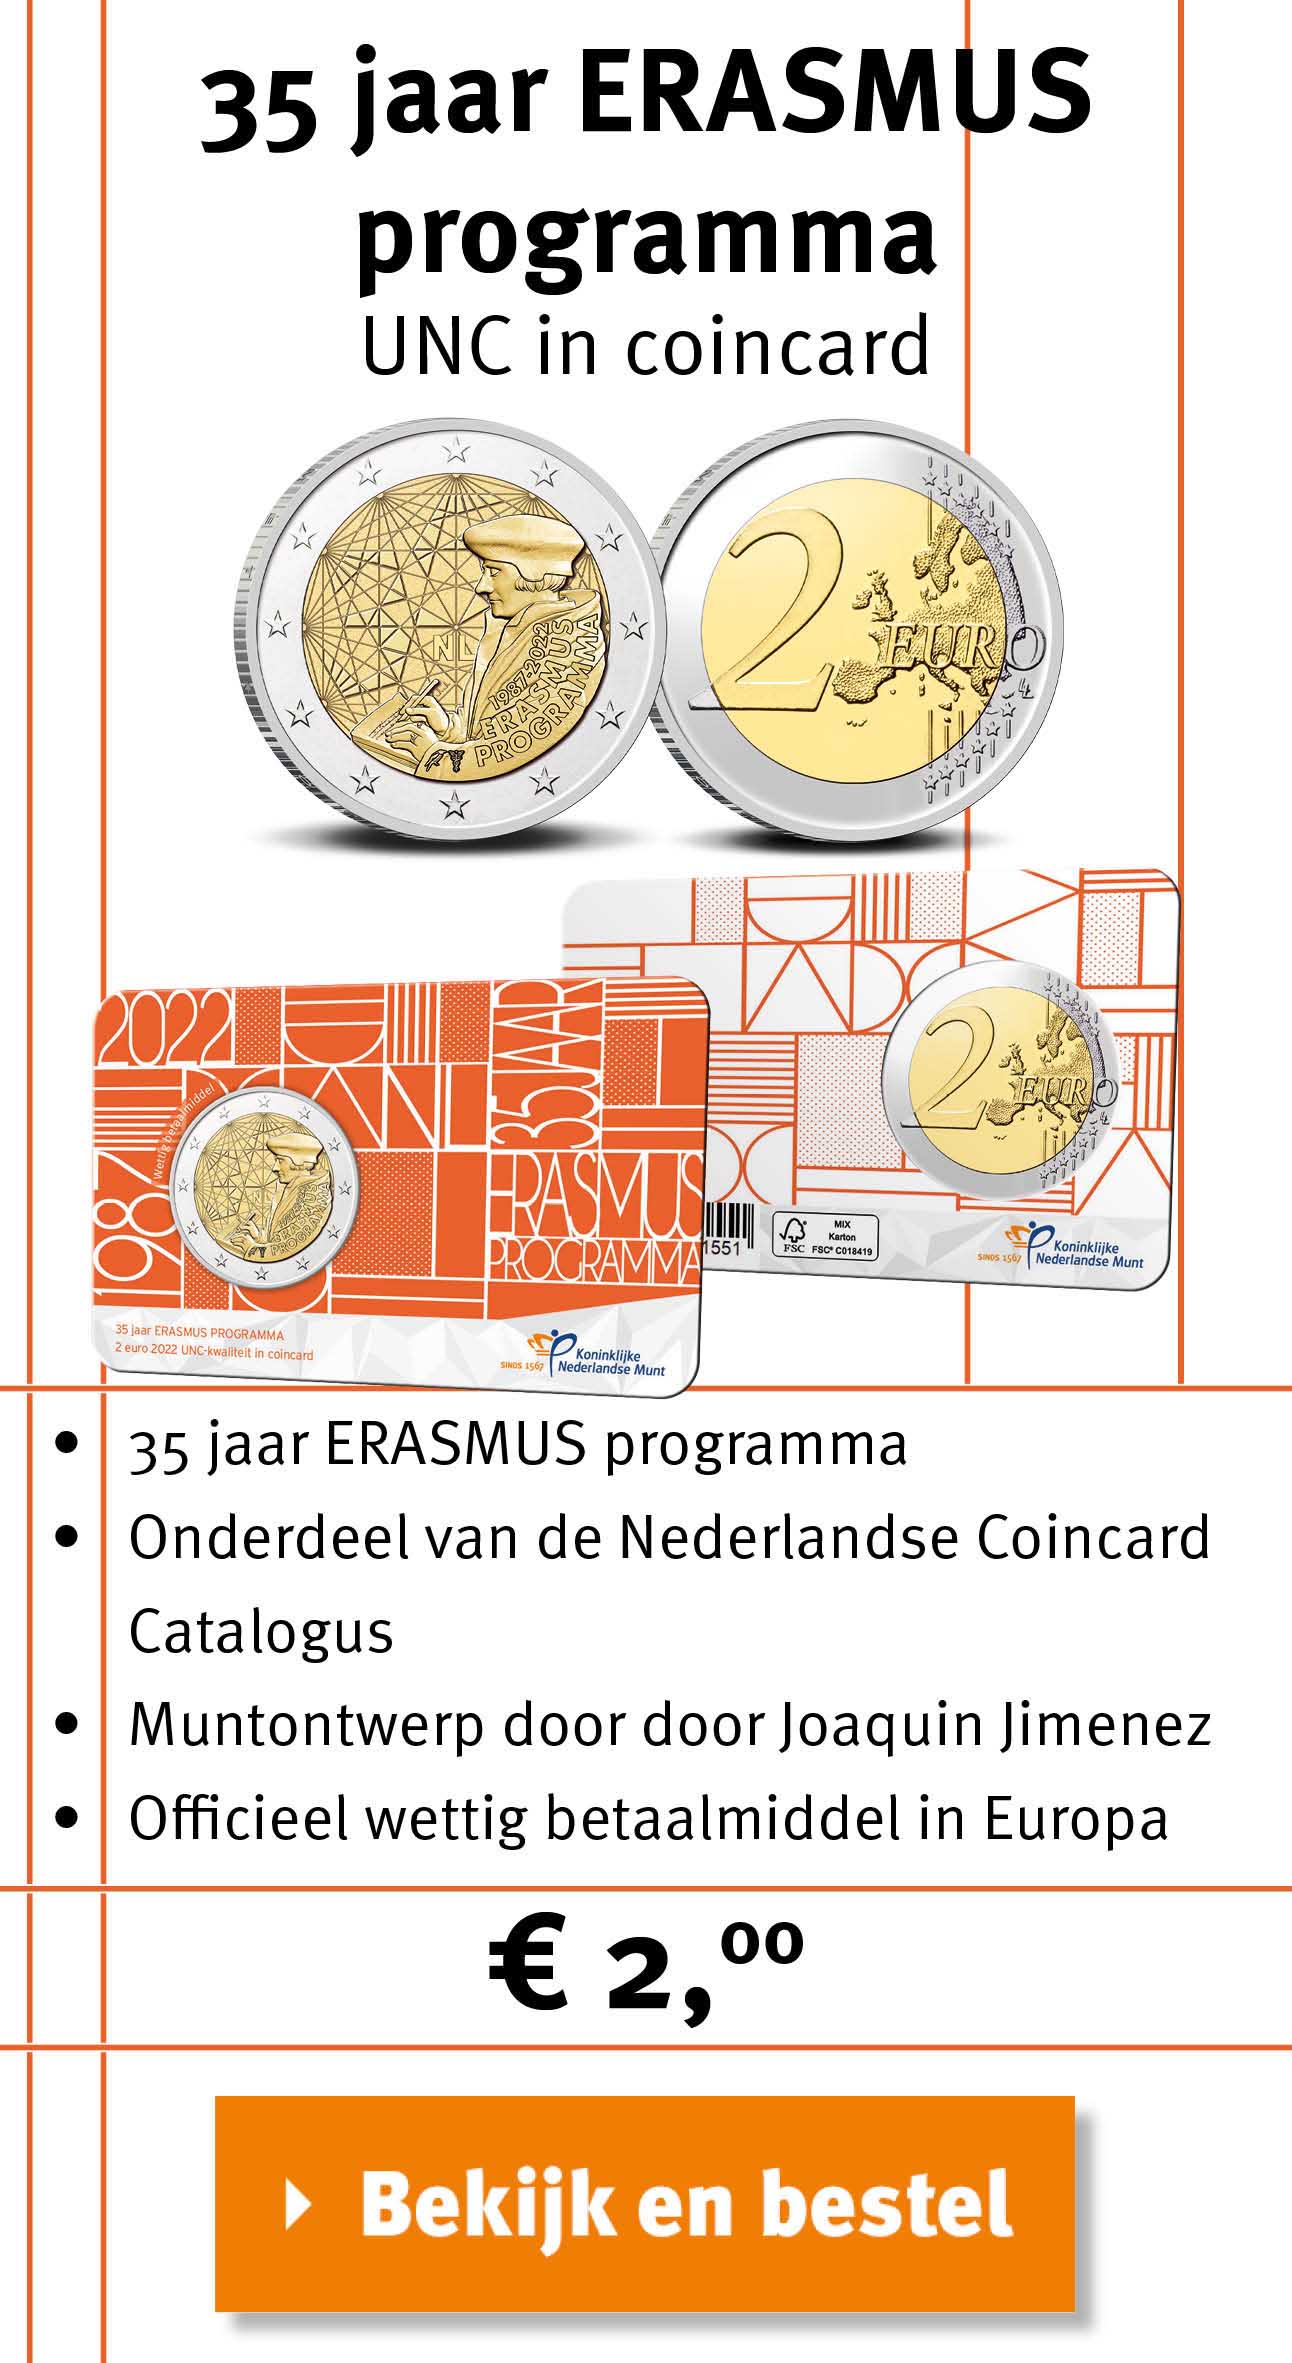 Bekijk en bestel: 35 jaar Erasmus coincard